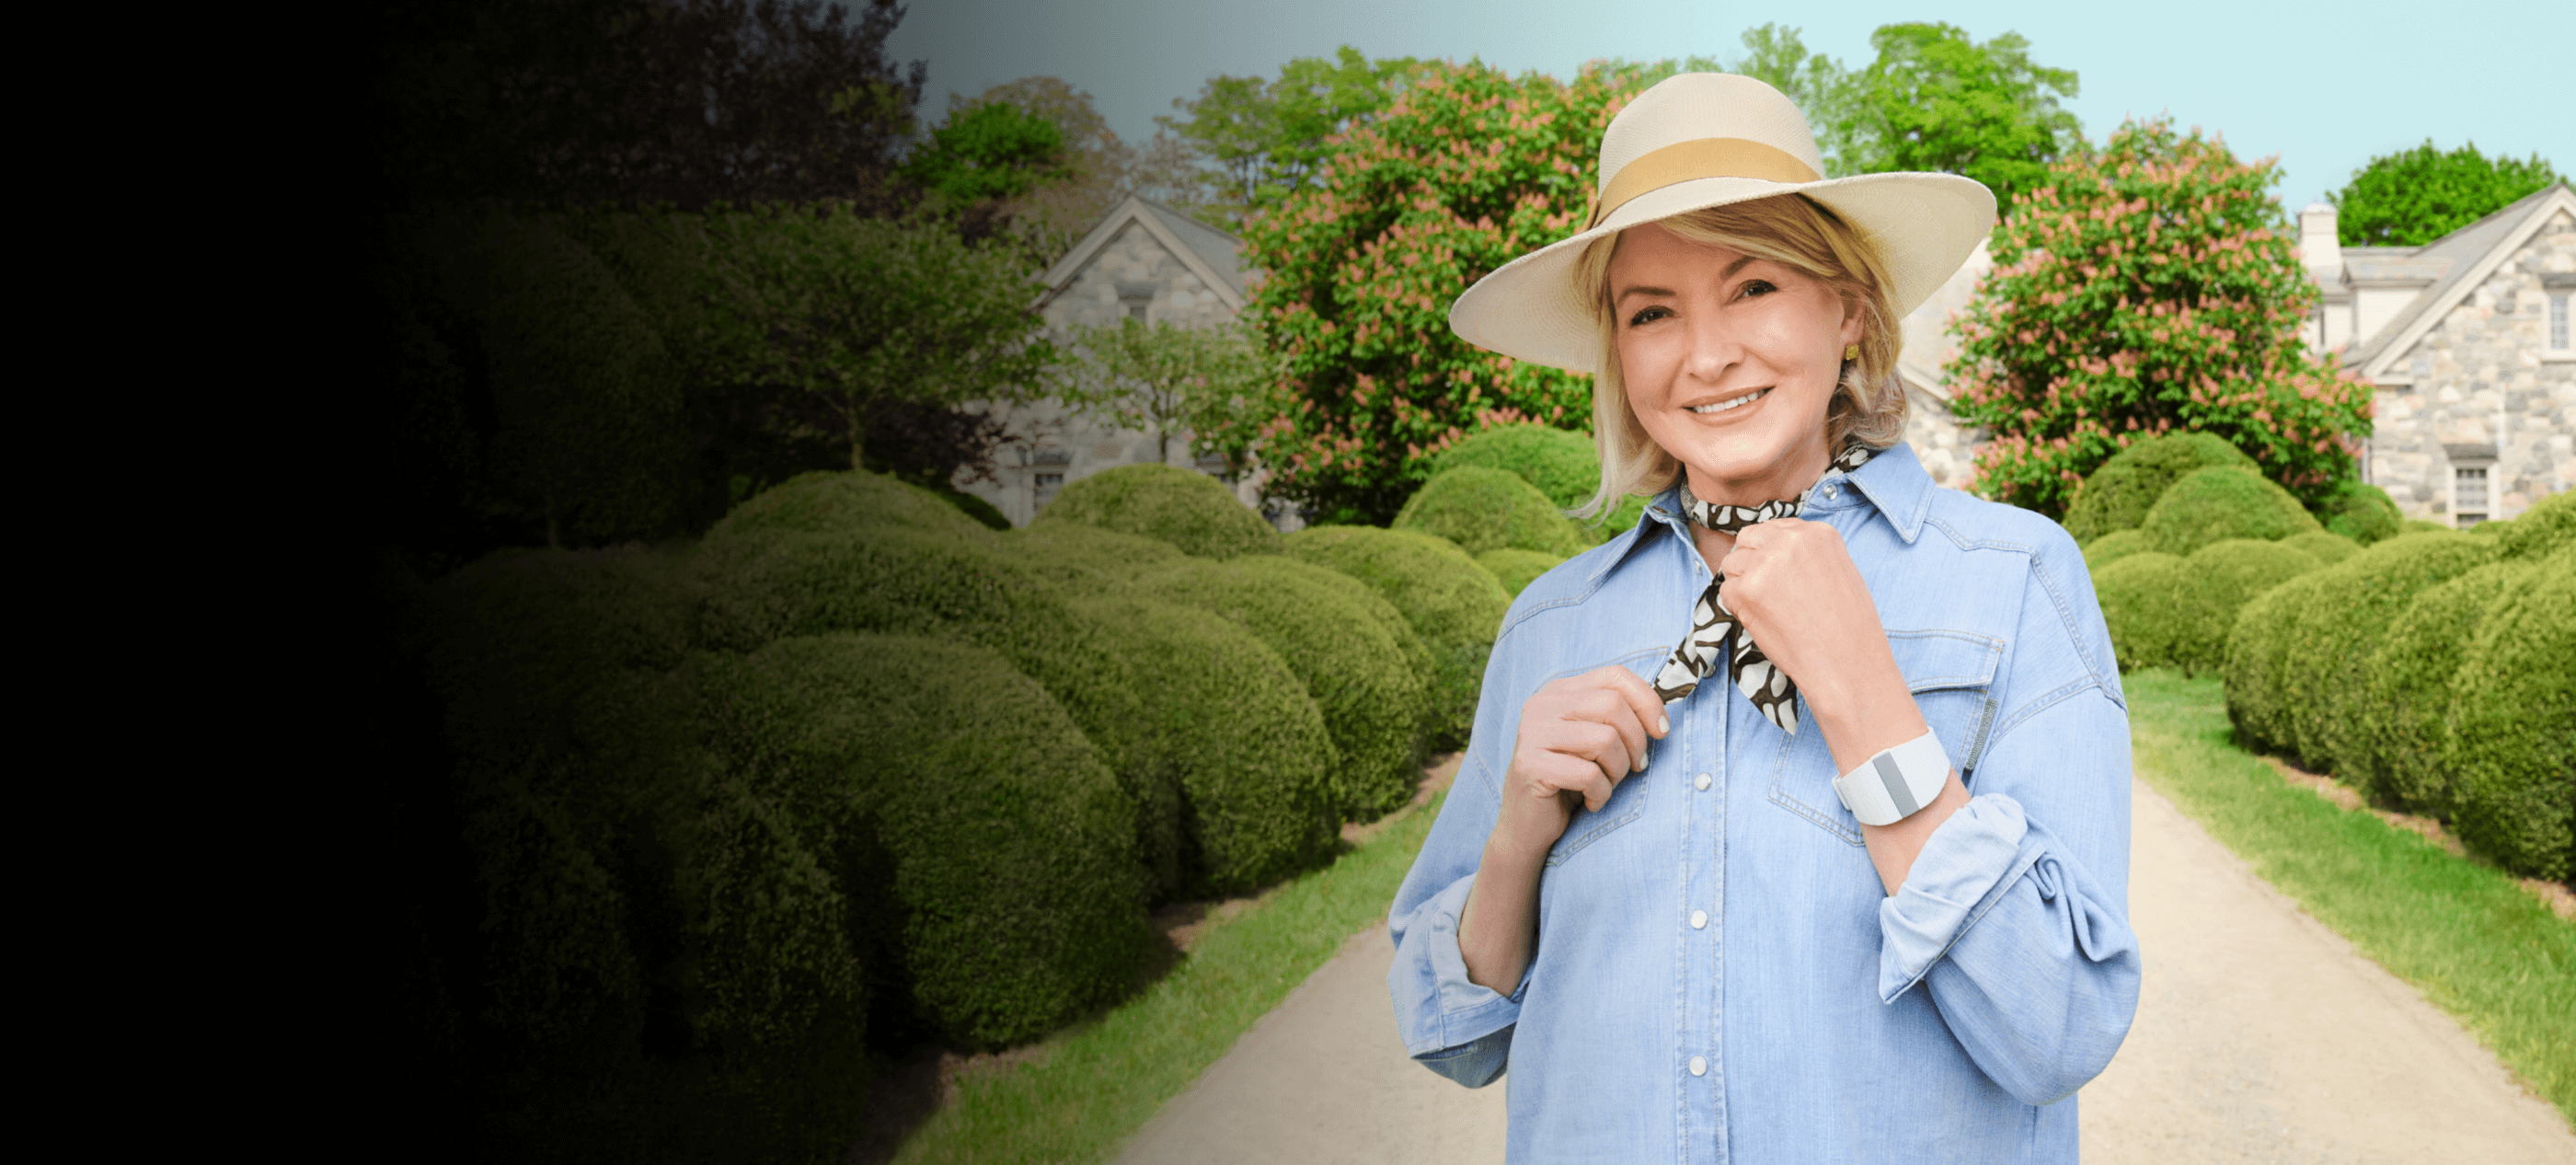 Martha Standing in a Garden Path